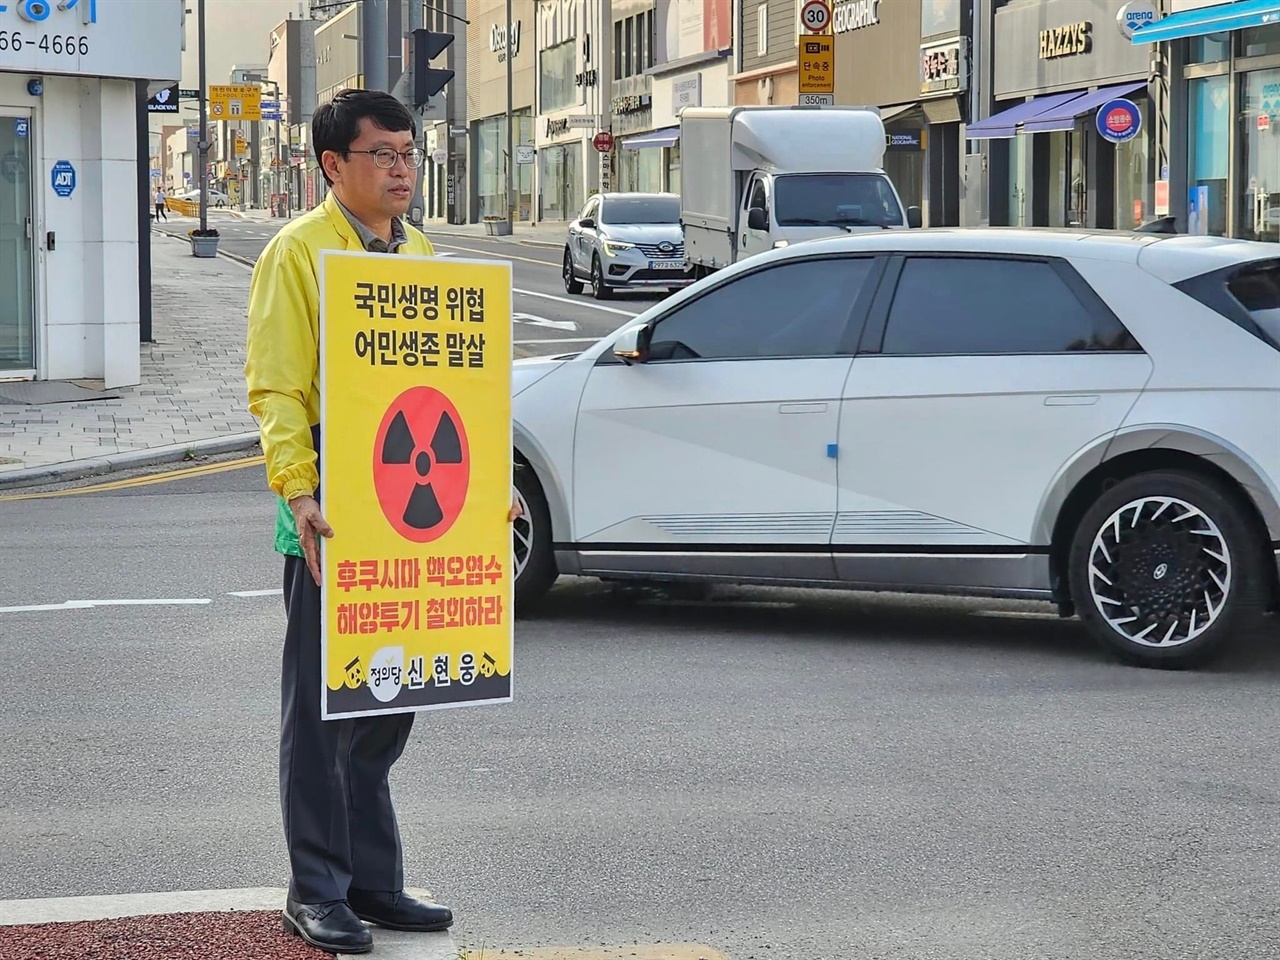 신현웅 정의당 서산태안위원장은 ‘국민생명 위협·어민생존 말살’, ‘후쿠시마 핵 오염수 해양투기 반대‘라고 적힌 손팻말을 들고 오염수 방류를 강력히 반대했다.